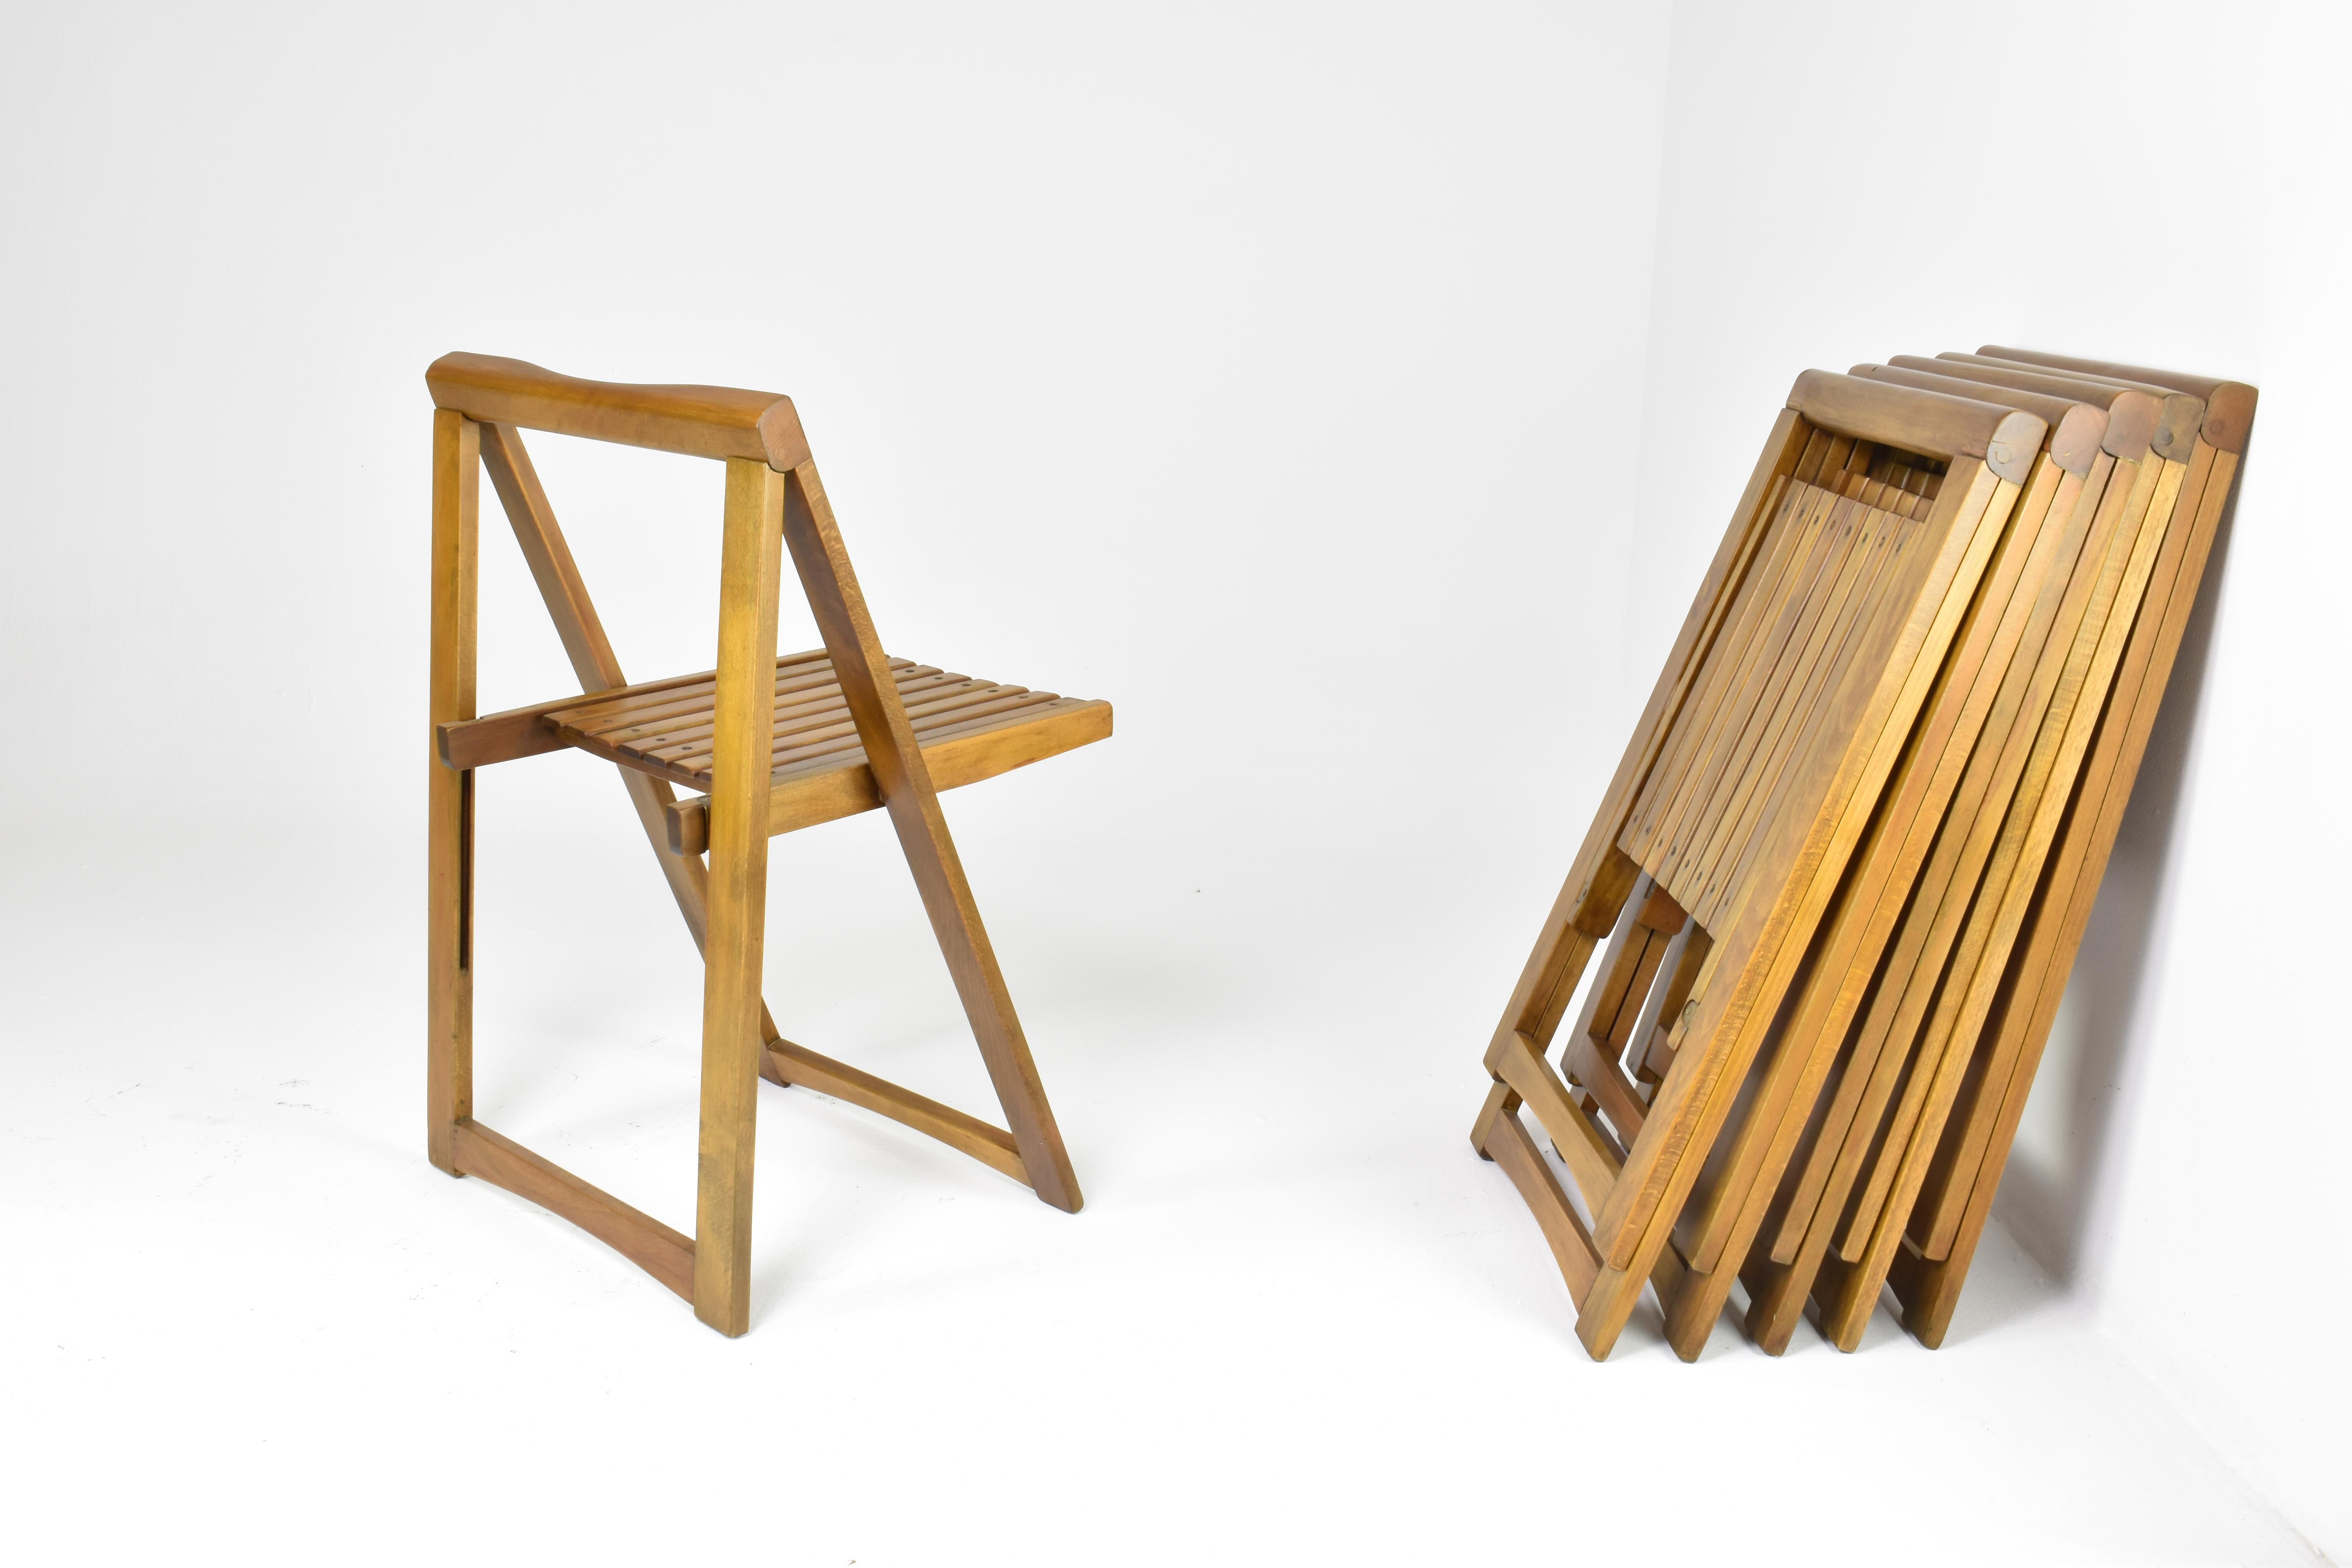 Un ensemble de six chaises italiennes pliantes ou chaises de jardin en bois de hêtre massif, conçues par Aldo Jacober pour Alberto Bazzani dans les années 1960.
 Connues pour leur artisanat exquis et leur design intemporel, ces chaises témoignent de